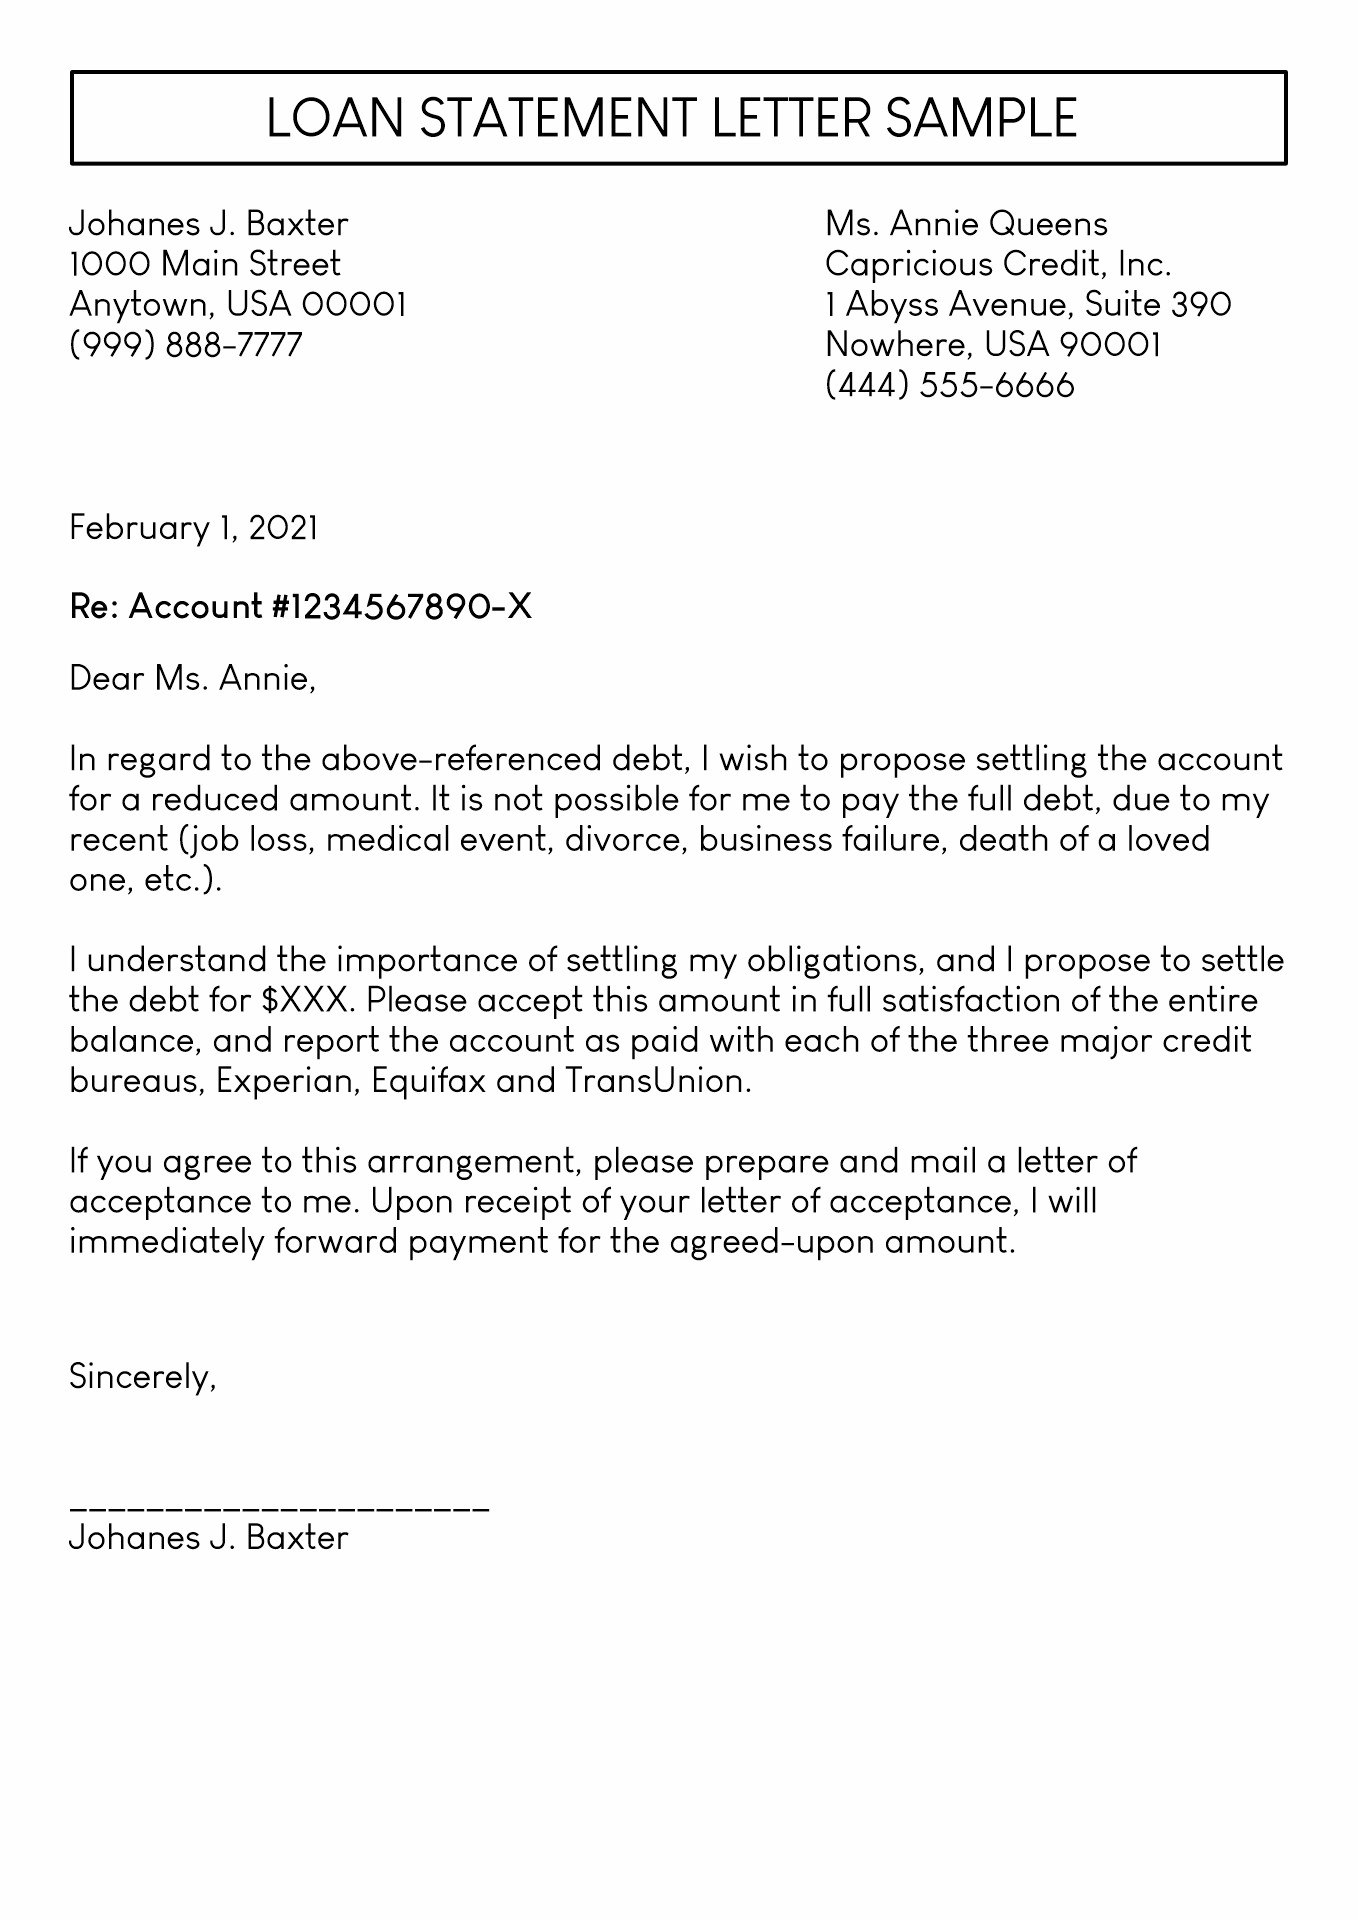 Loan Settlement Letter Sample